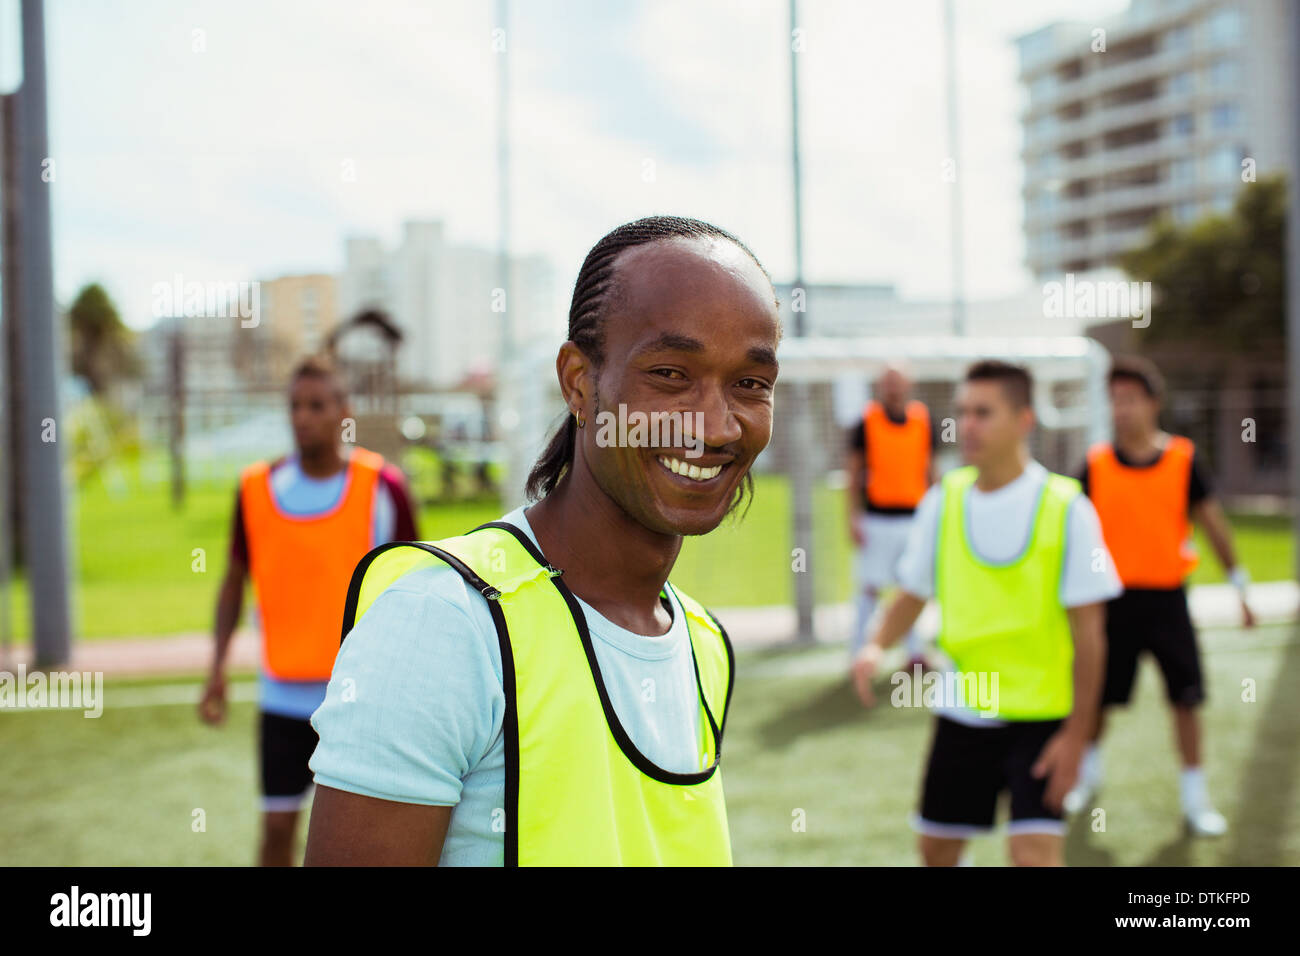 Soccer player smiling sur terrain Banque D'Images